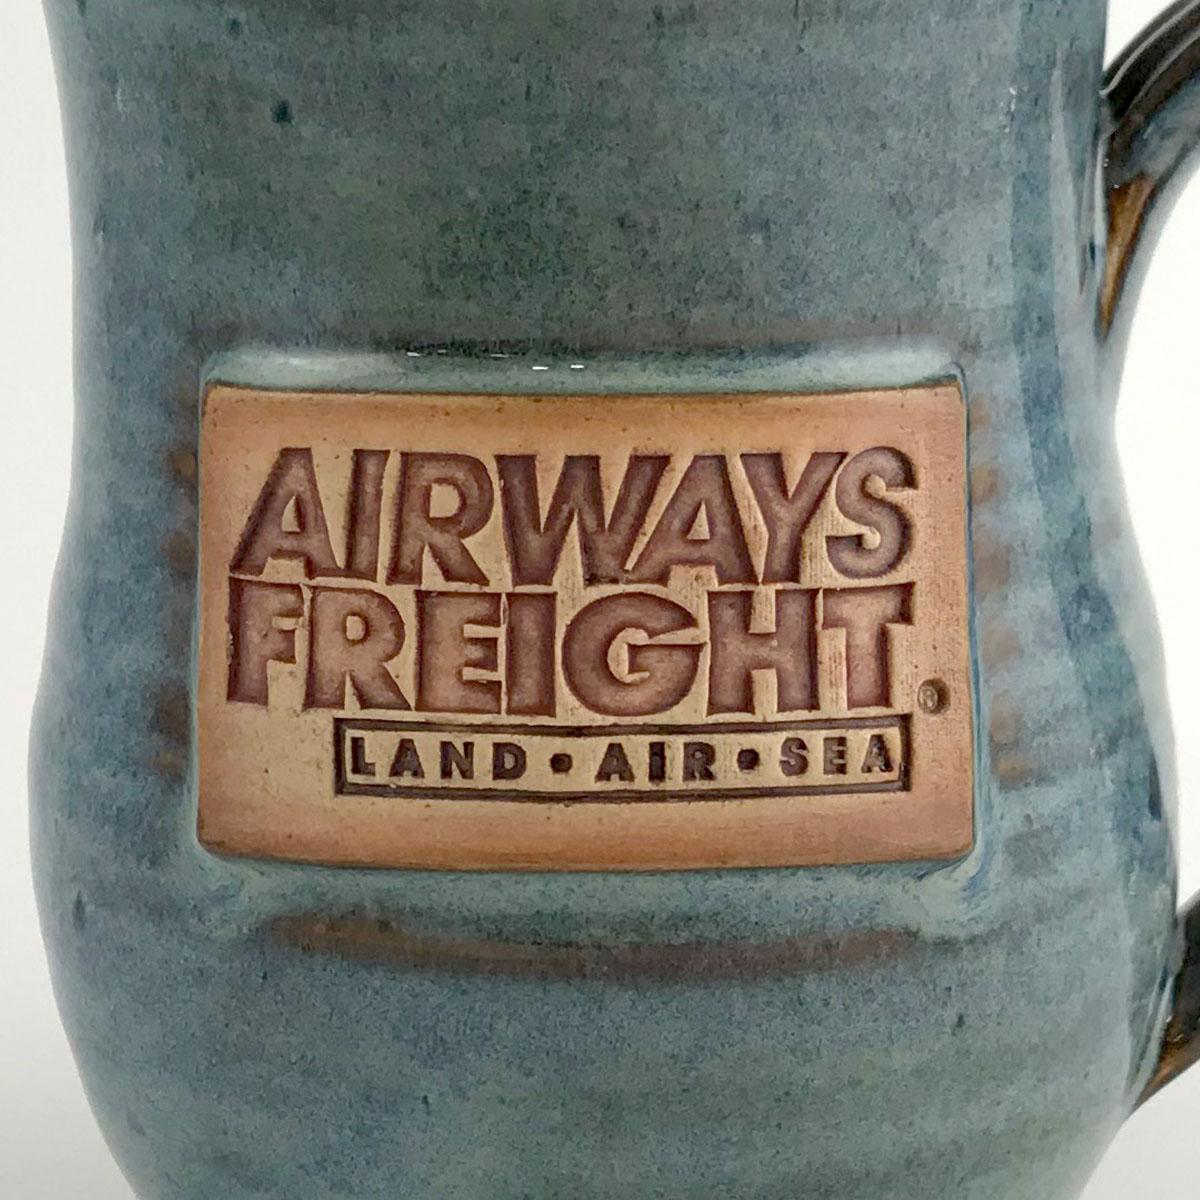 airways freight logo after